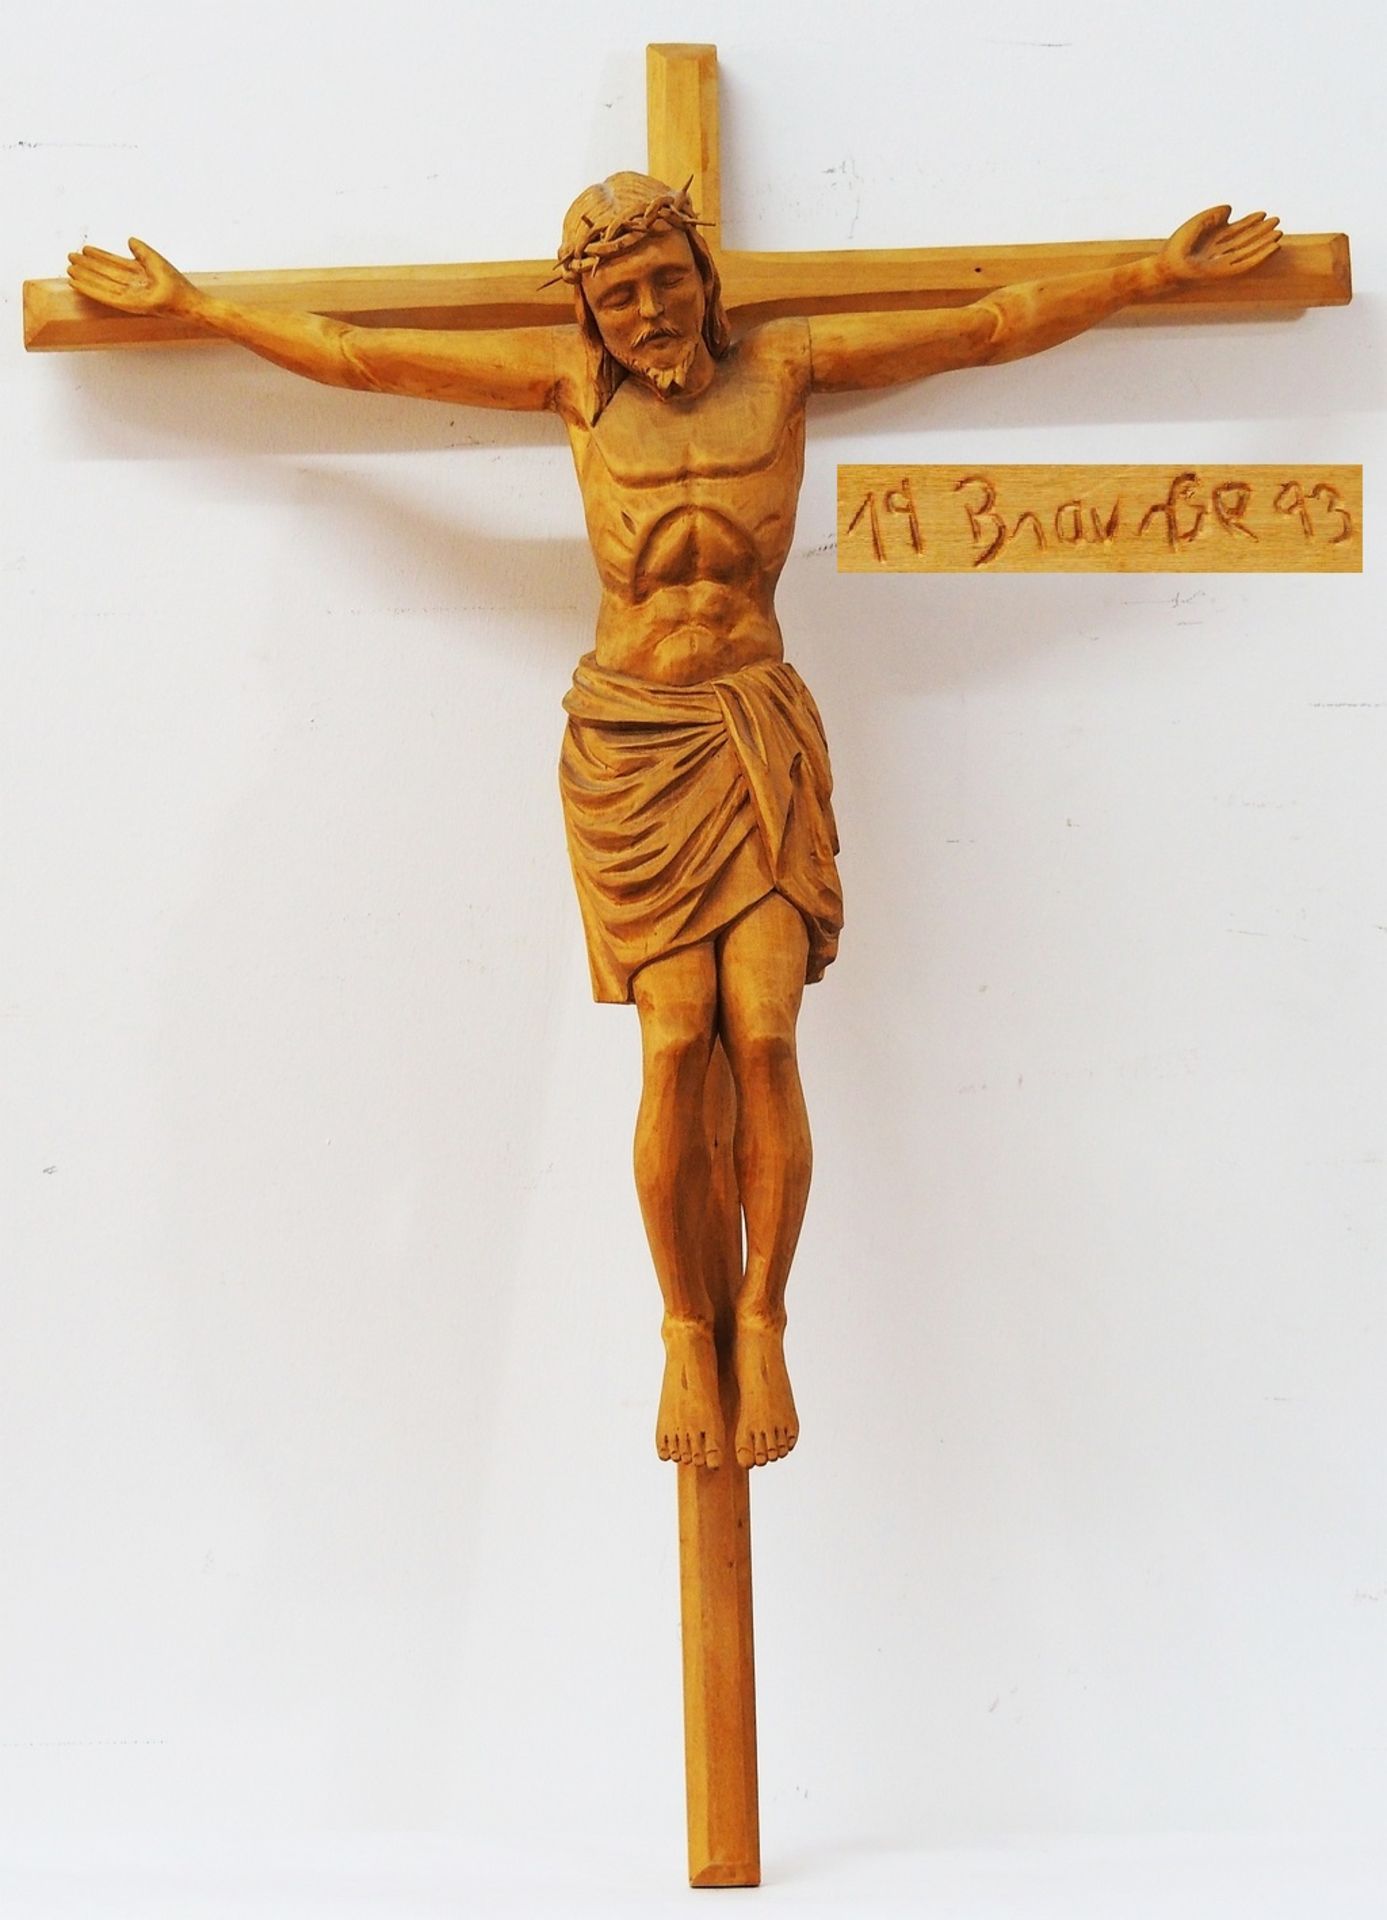 Gekreuzigter Christus. BRAUSSE, Gerhard, geb. 1960, tätig mit Atelier in Steinkirchen